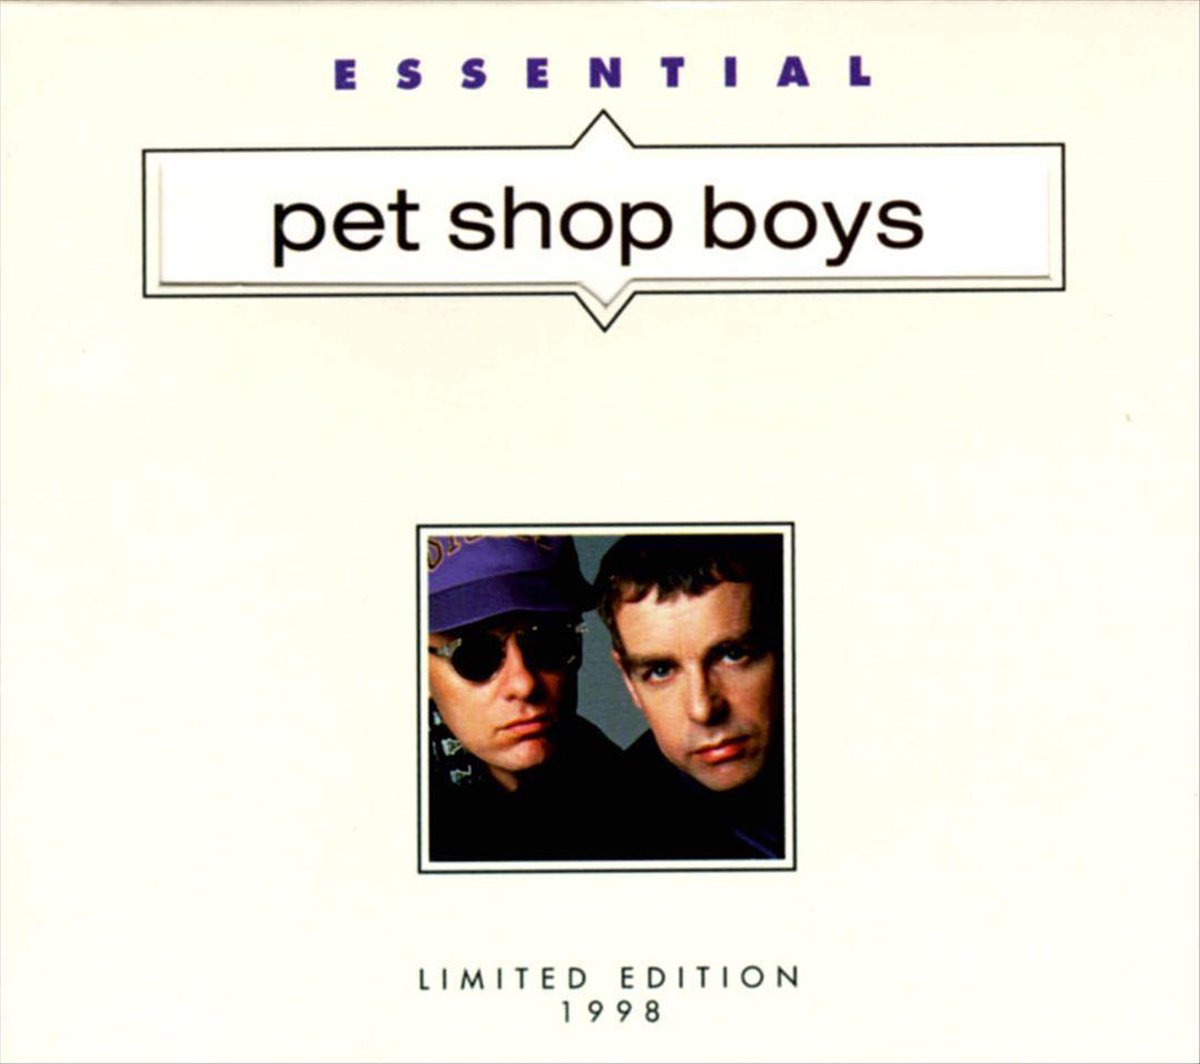 Essential Pet Shop Boys - Pet Shop Boys